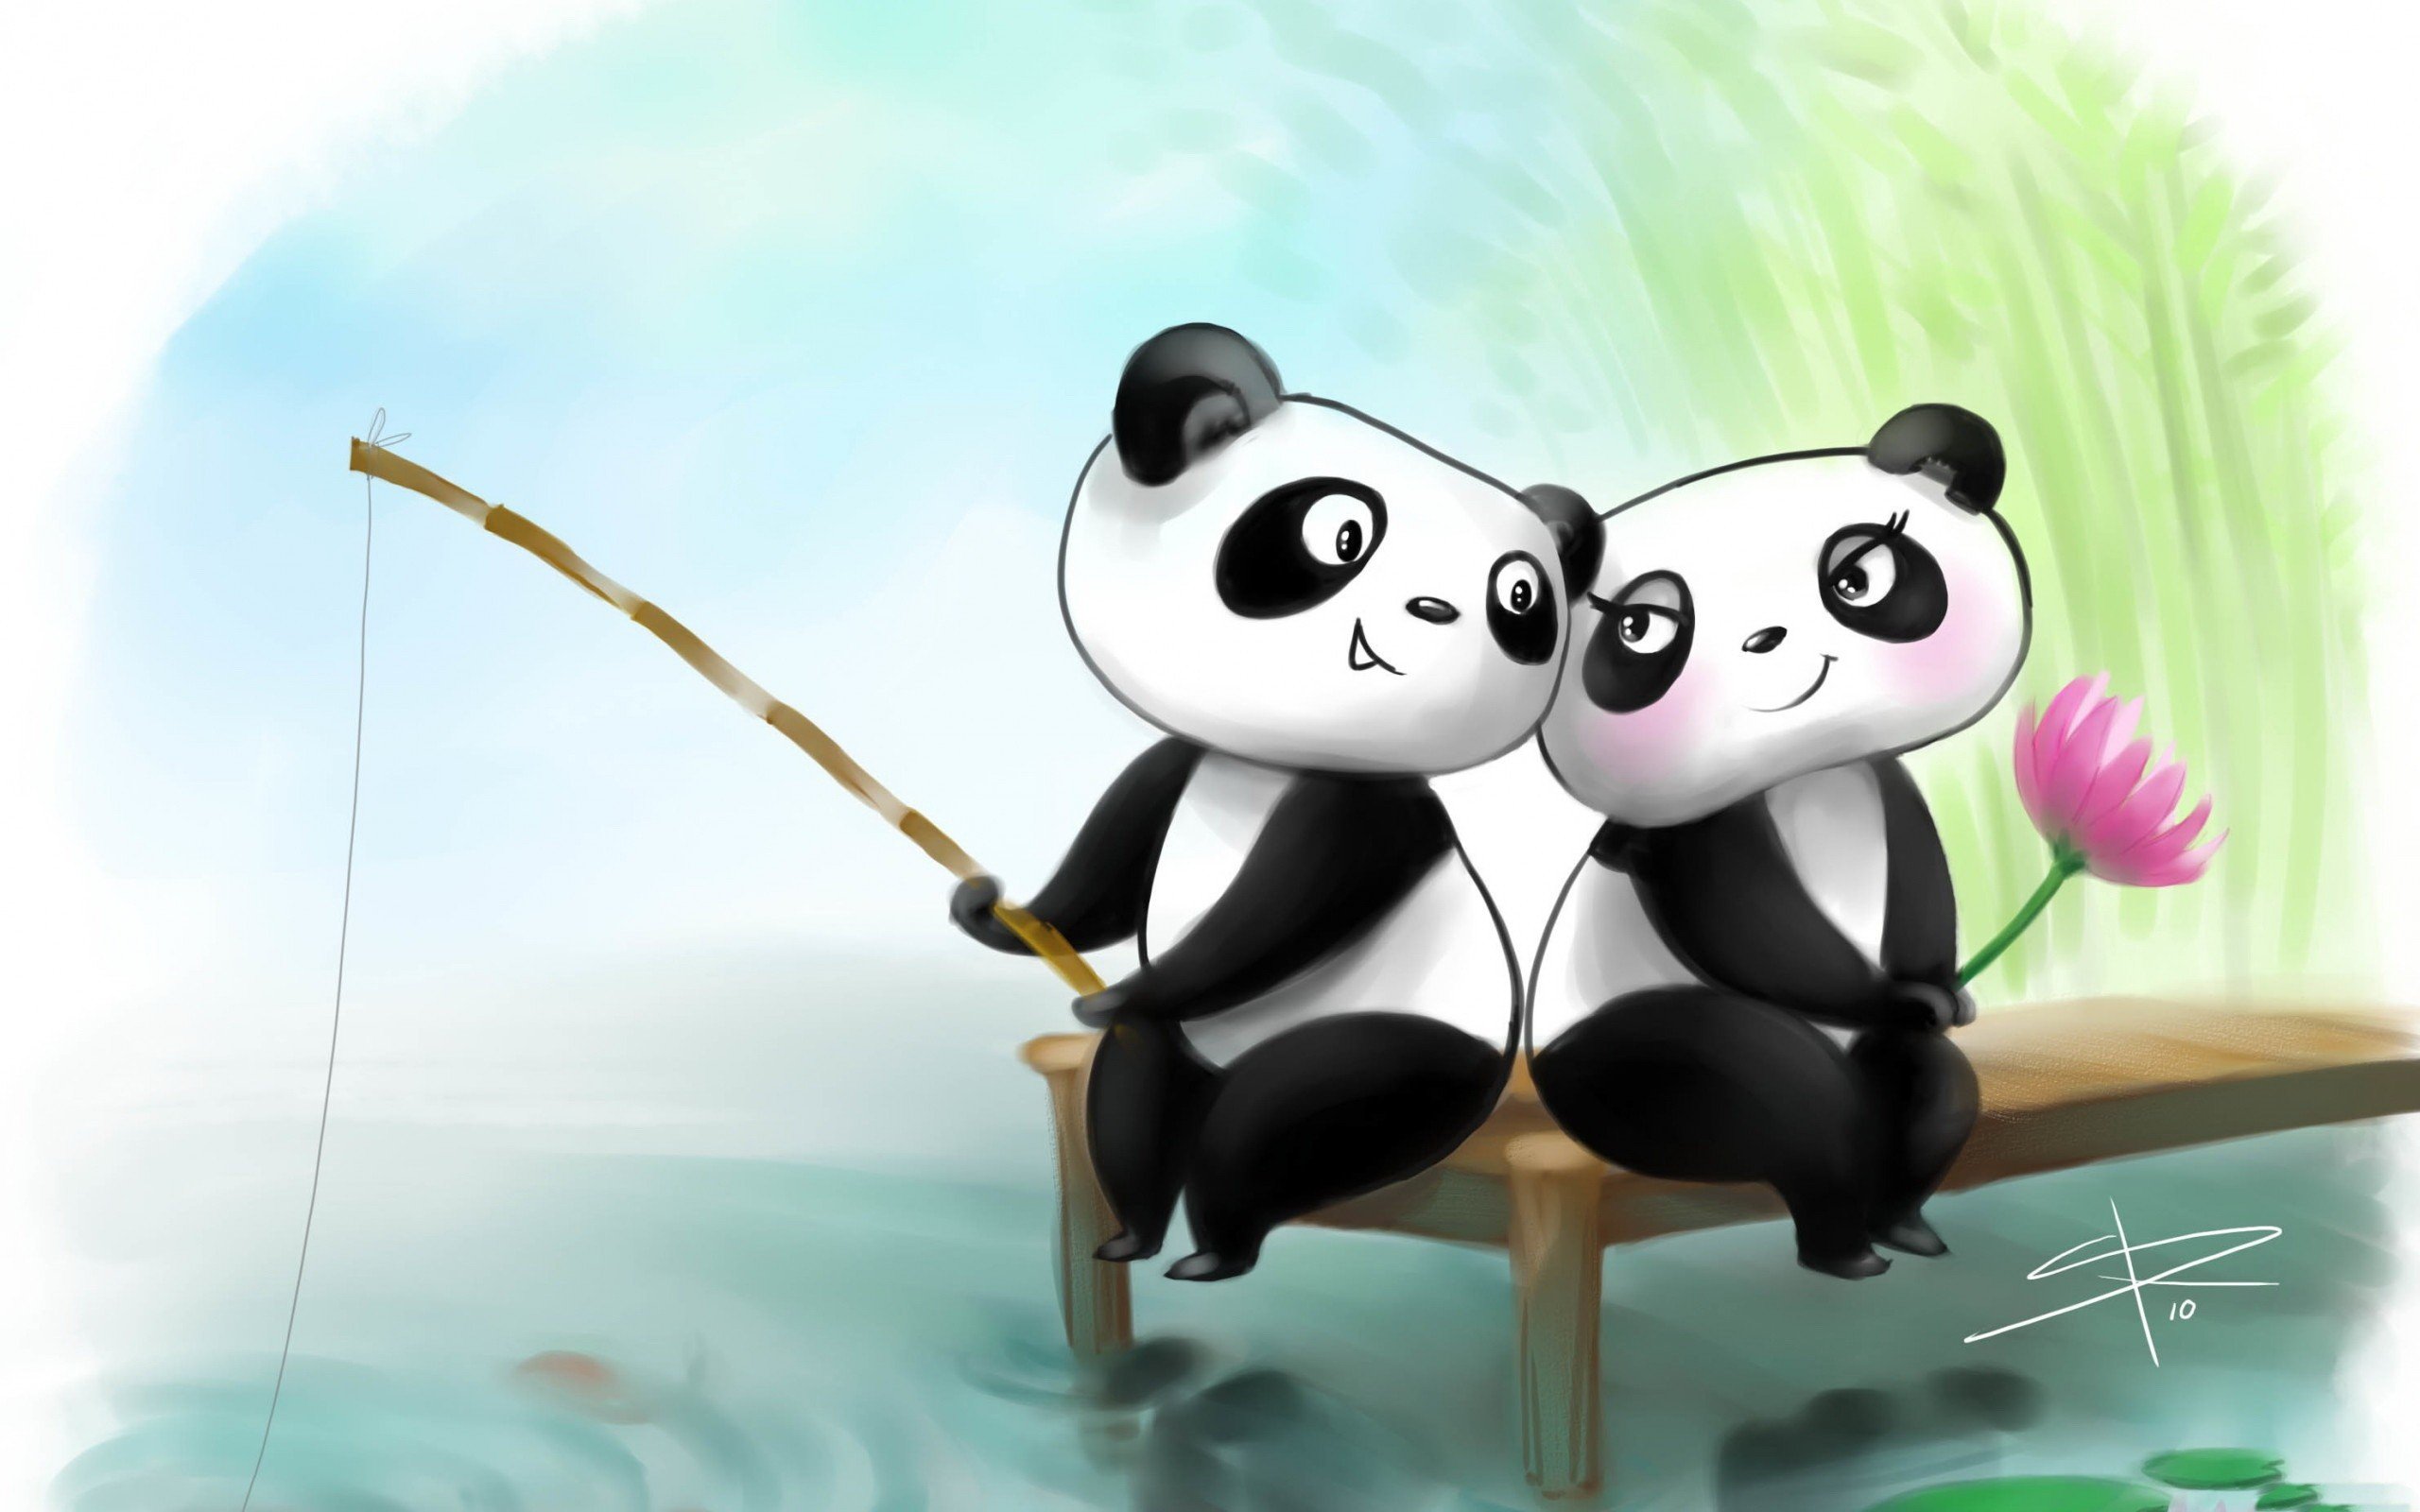 Обои на телефон для друзей. Панда любовь. Картинки про любовь мультяшные. Панда мультяшная. Влюбленные мультяшки.